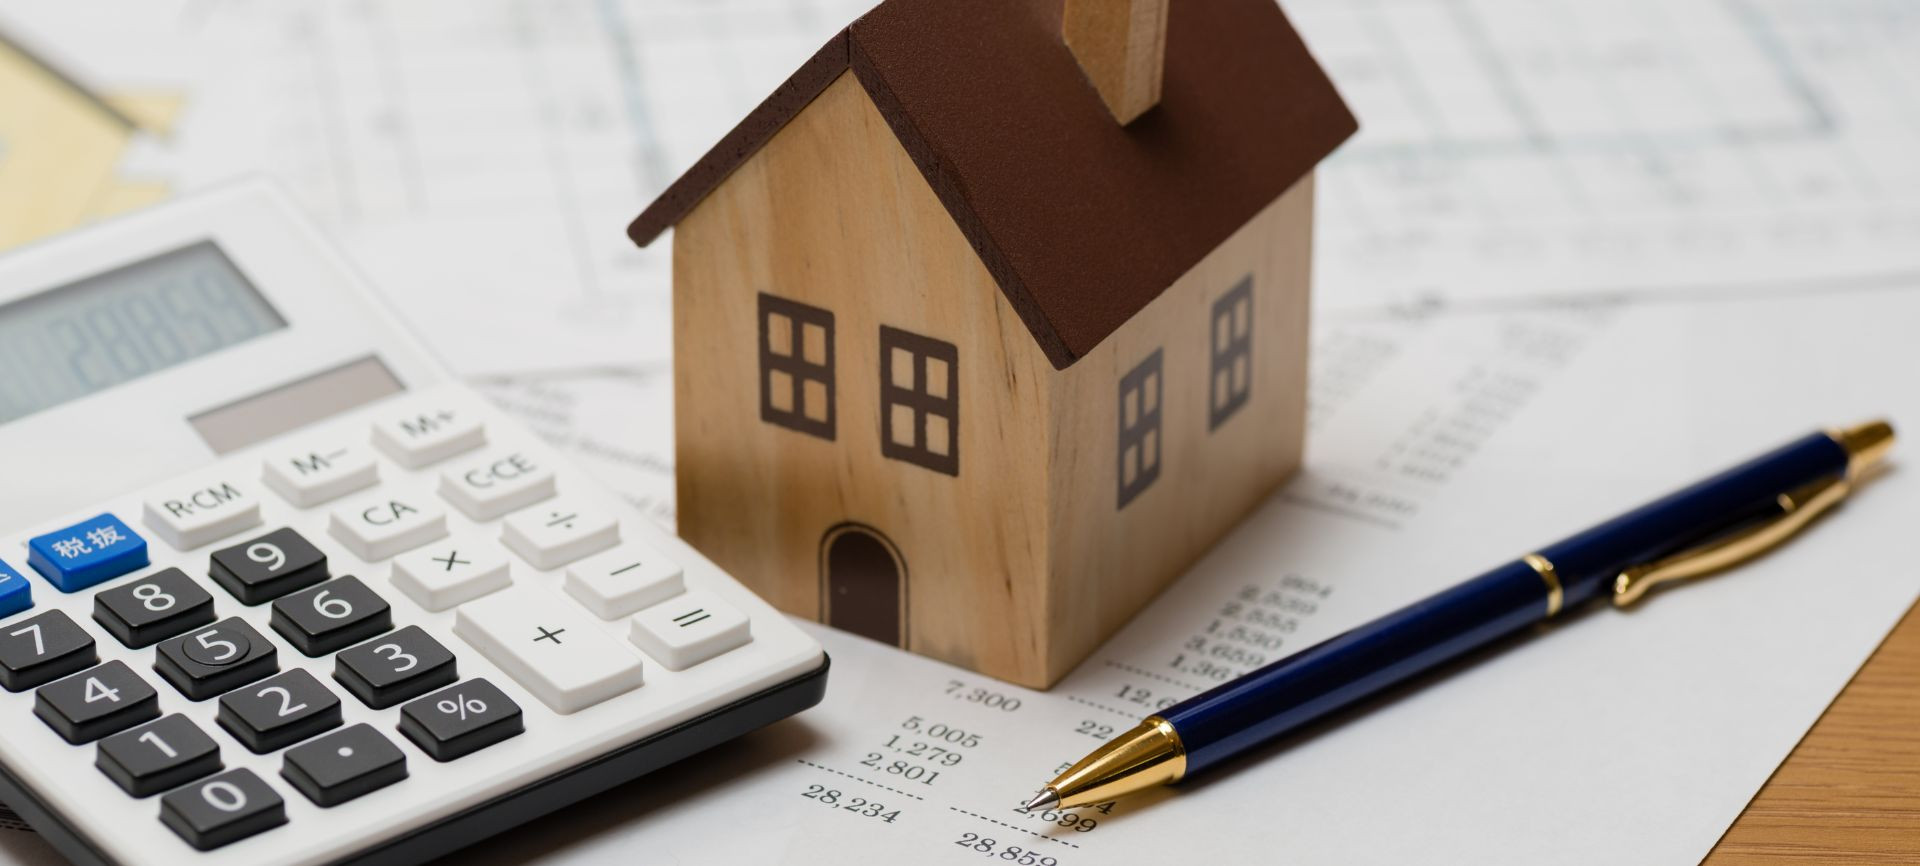 Berencana Membeli Rumah Kenali Dulu dengan Biaya dan Pajak yang Harus Ditanggung Saat Jual Beli Rumah